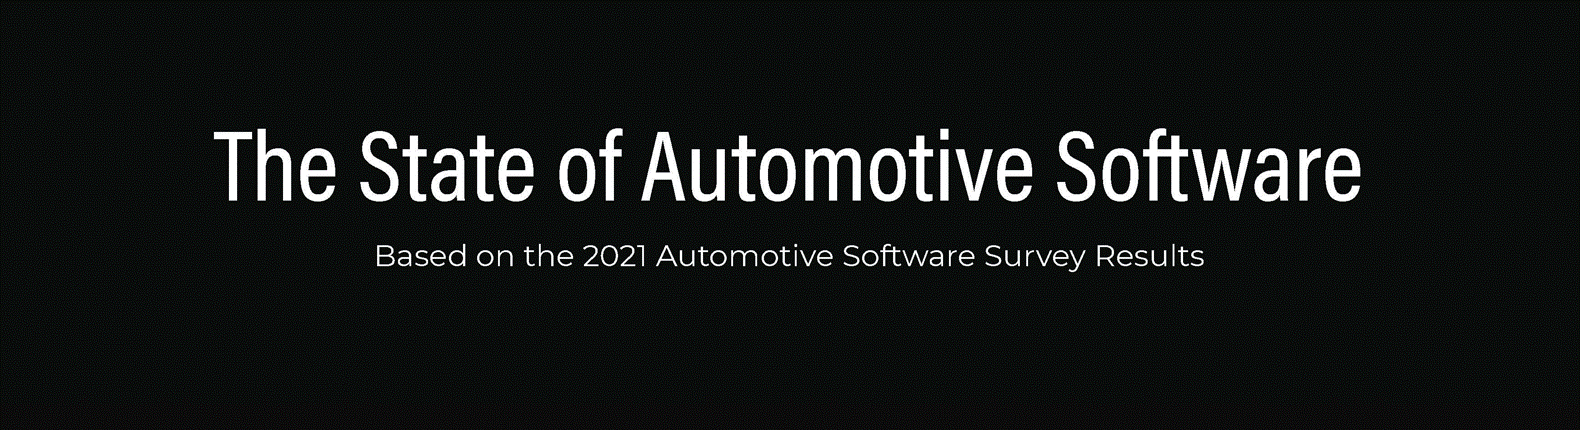 The 2021 Automotive Software Survey Report